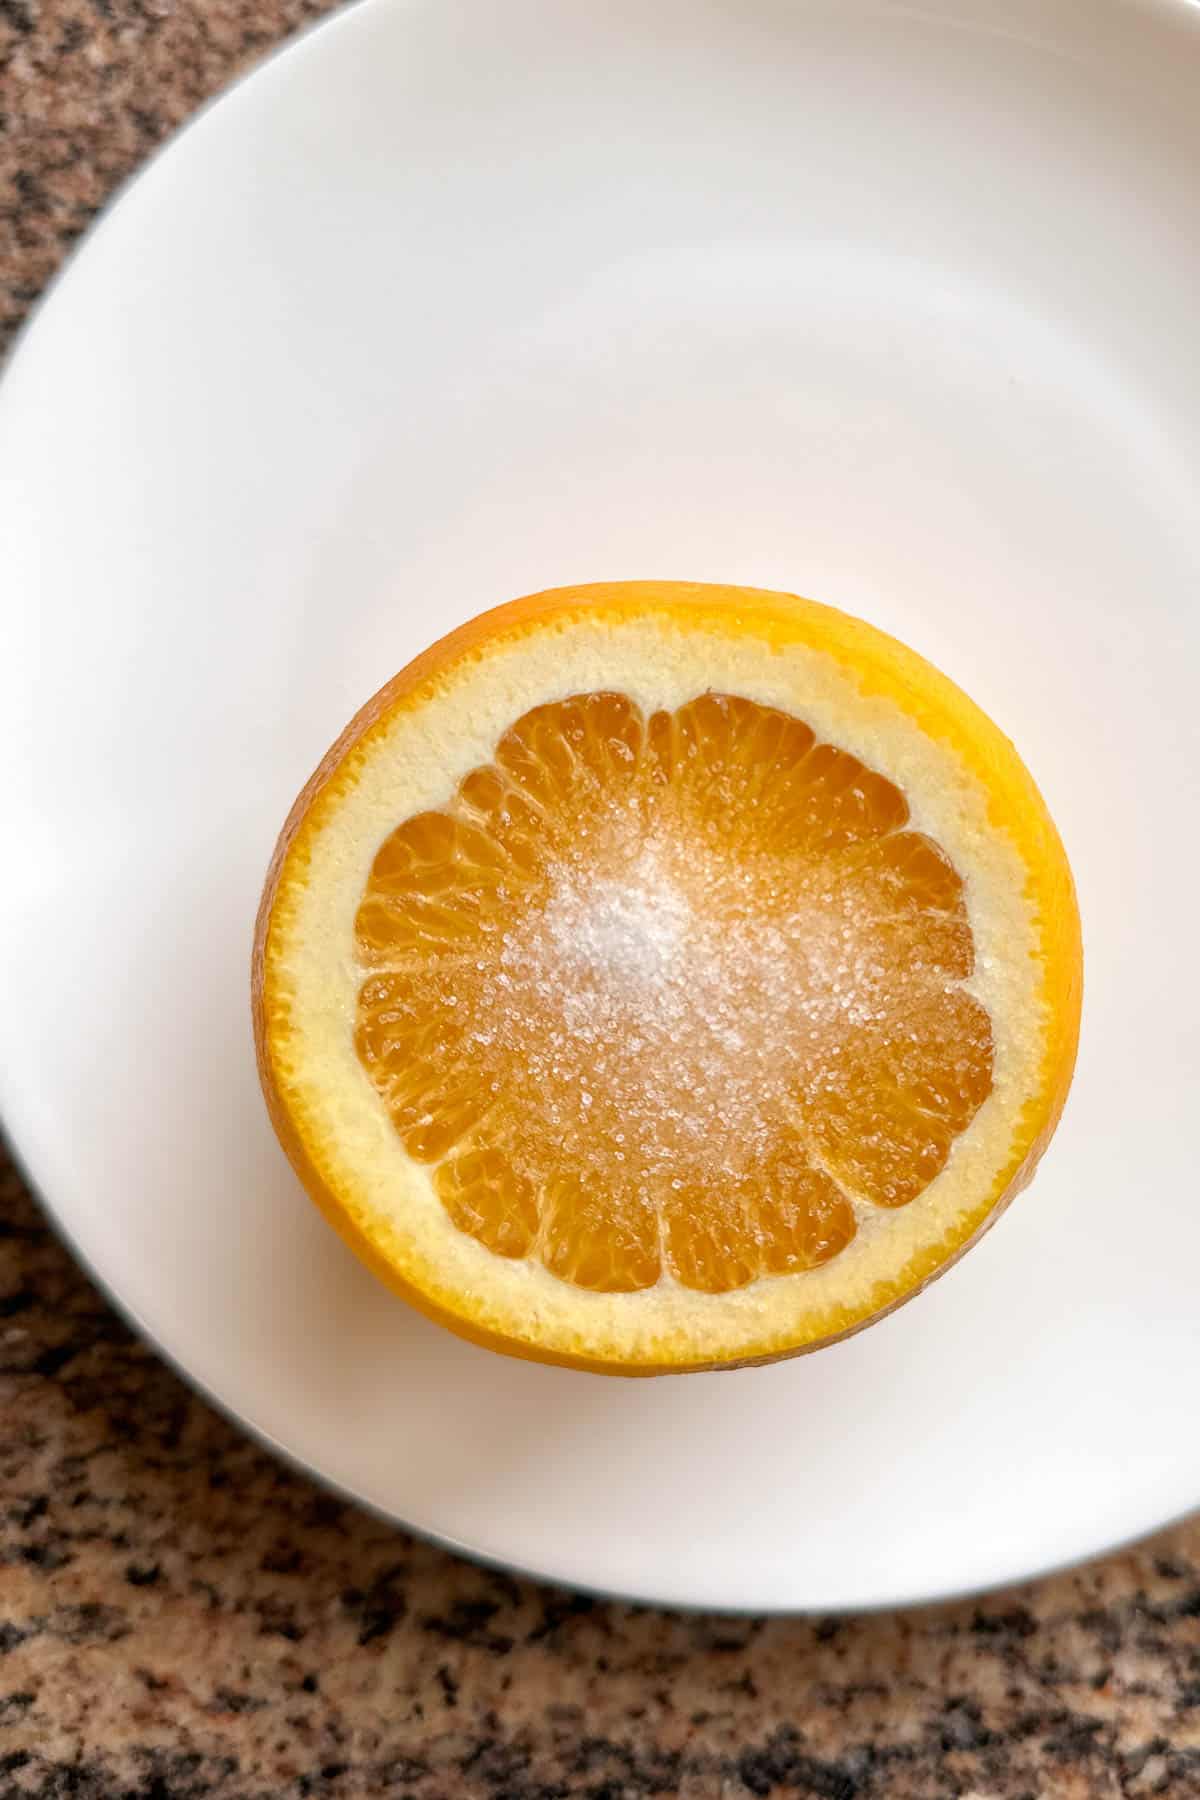 Add salt to an orange.